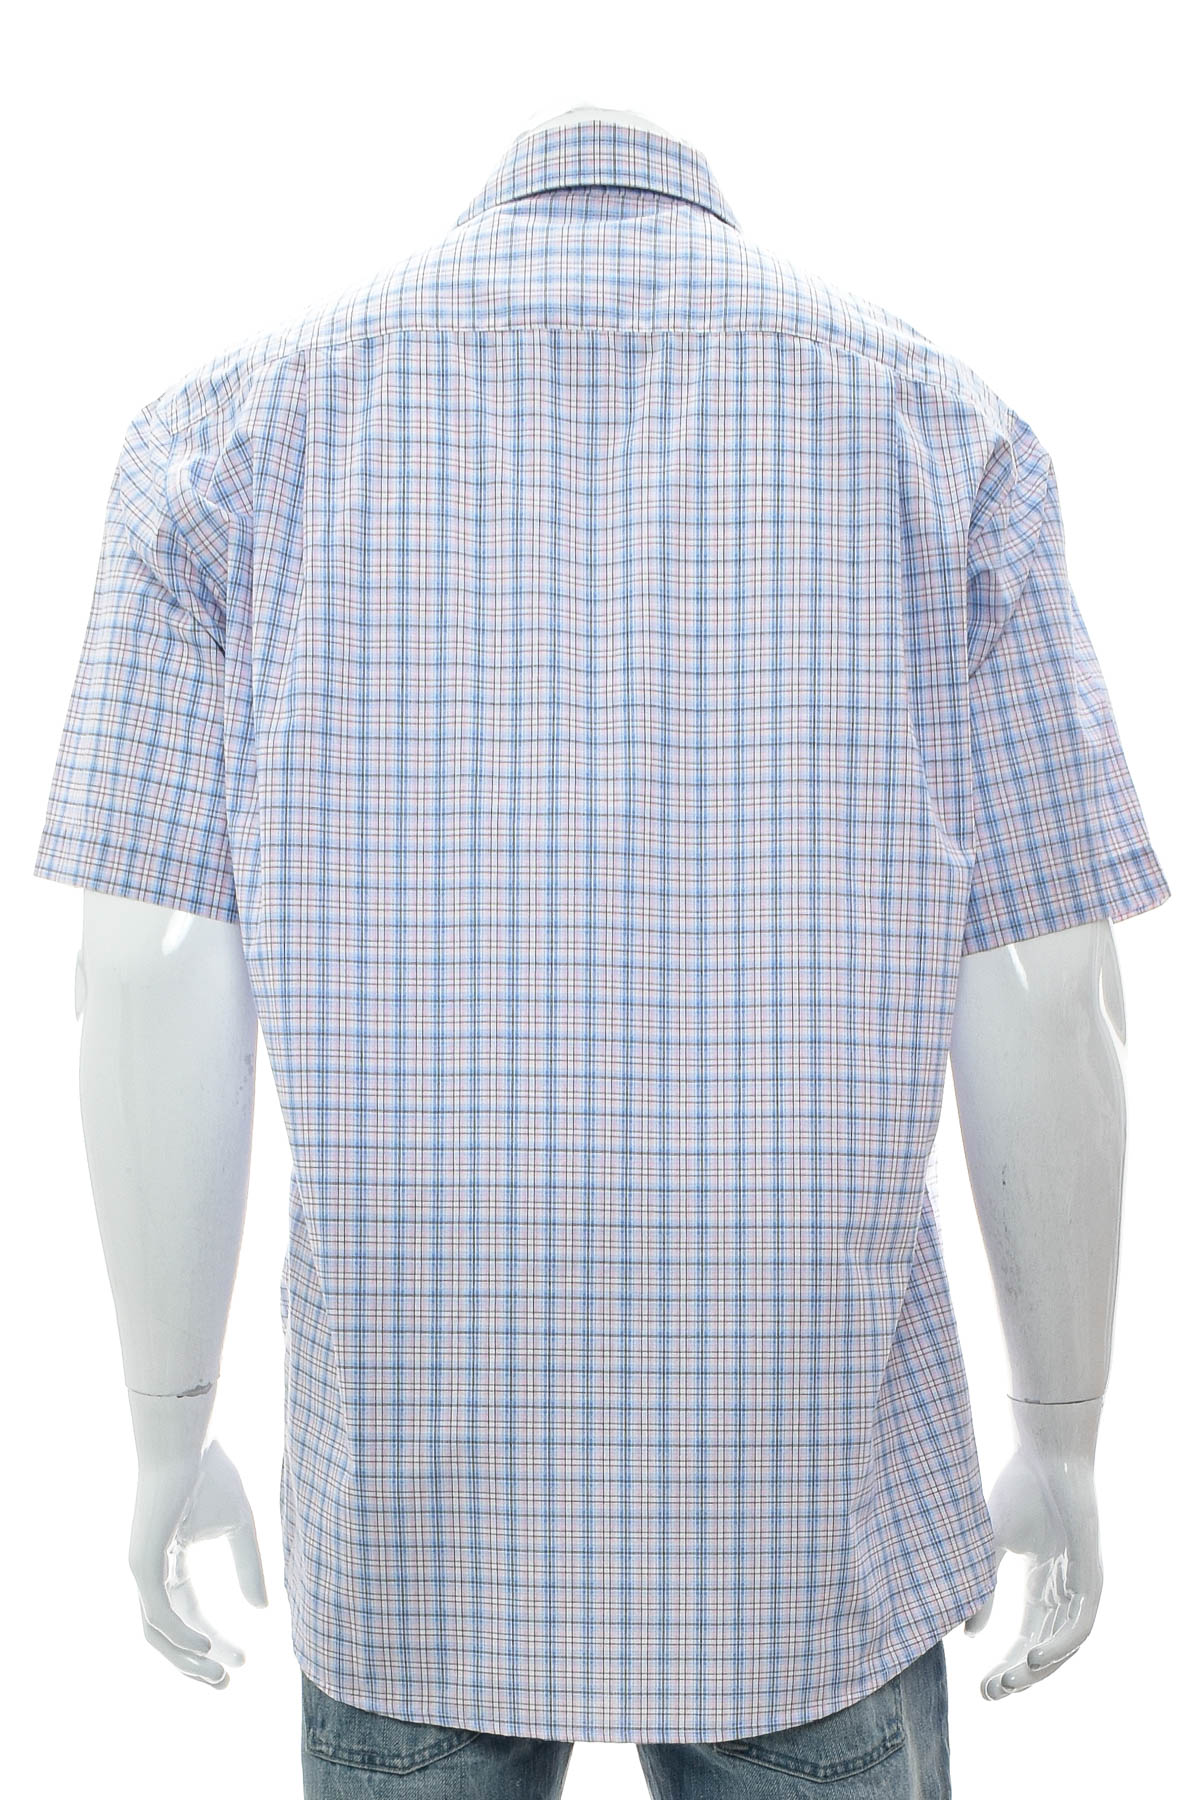 Men's shirt - Van Linnen - 1